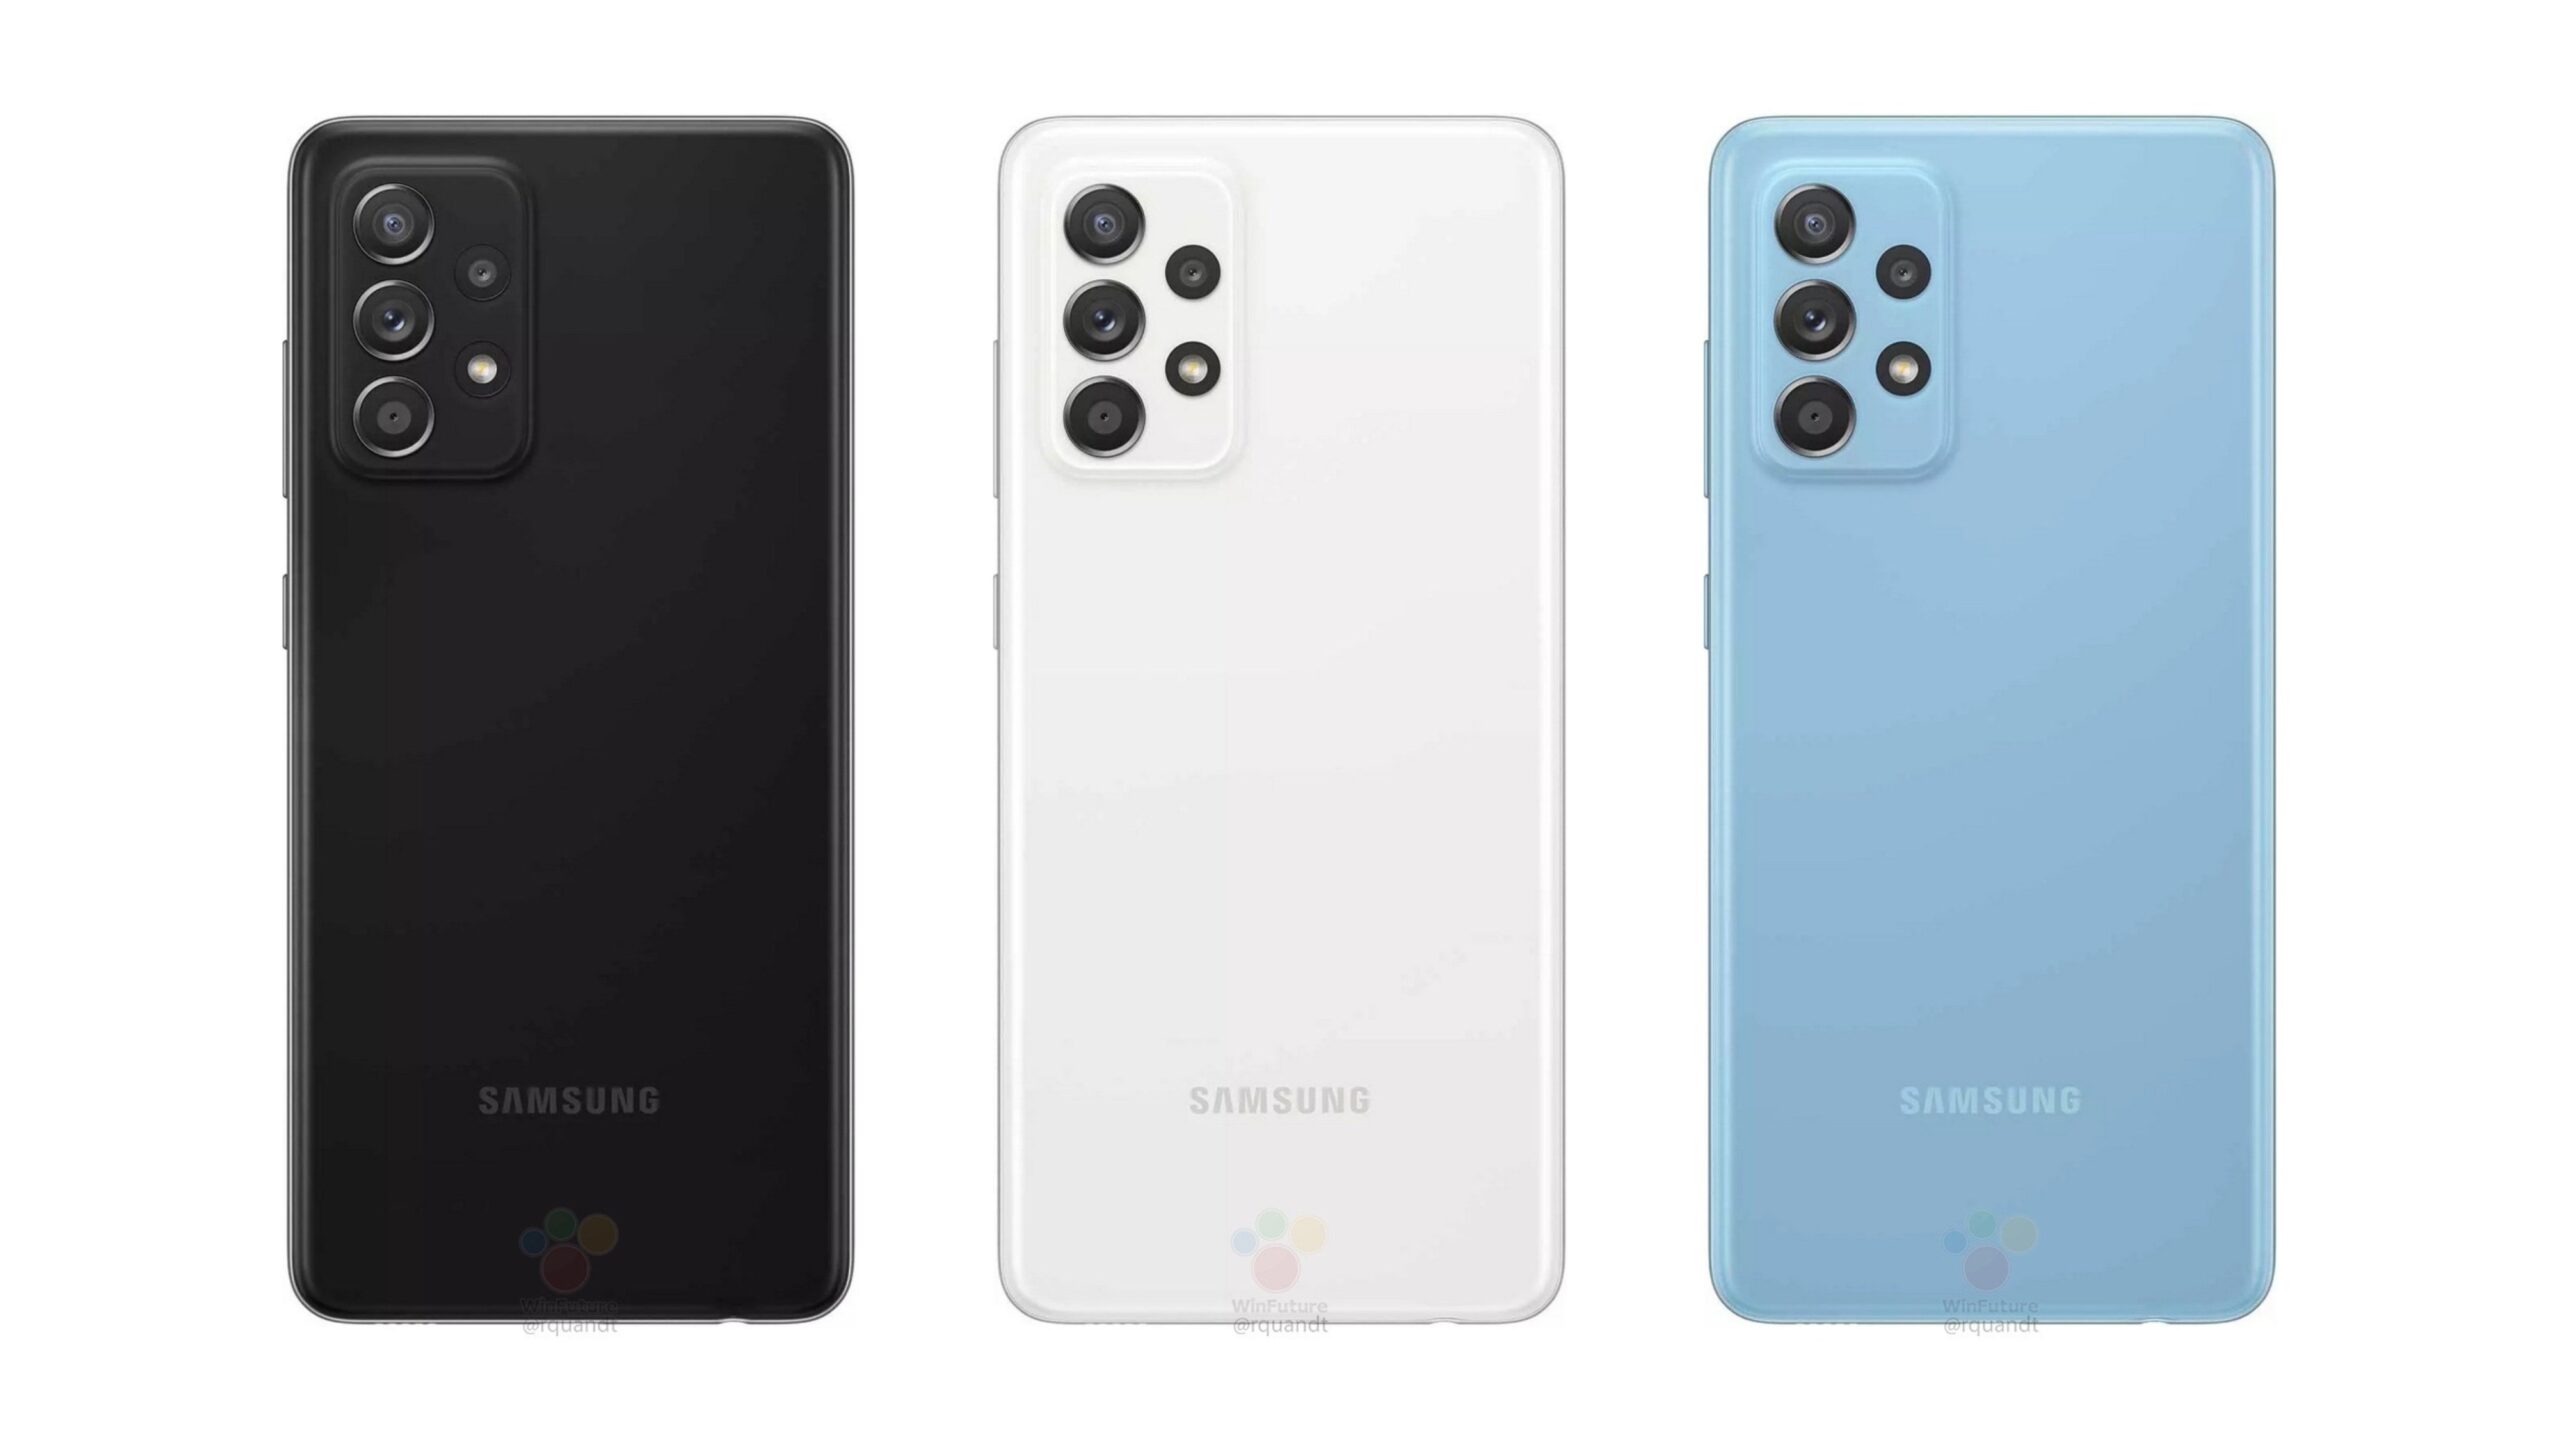 Samsung-Galaxy-A52